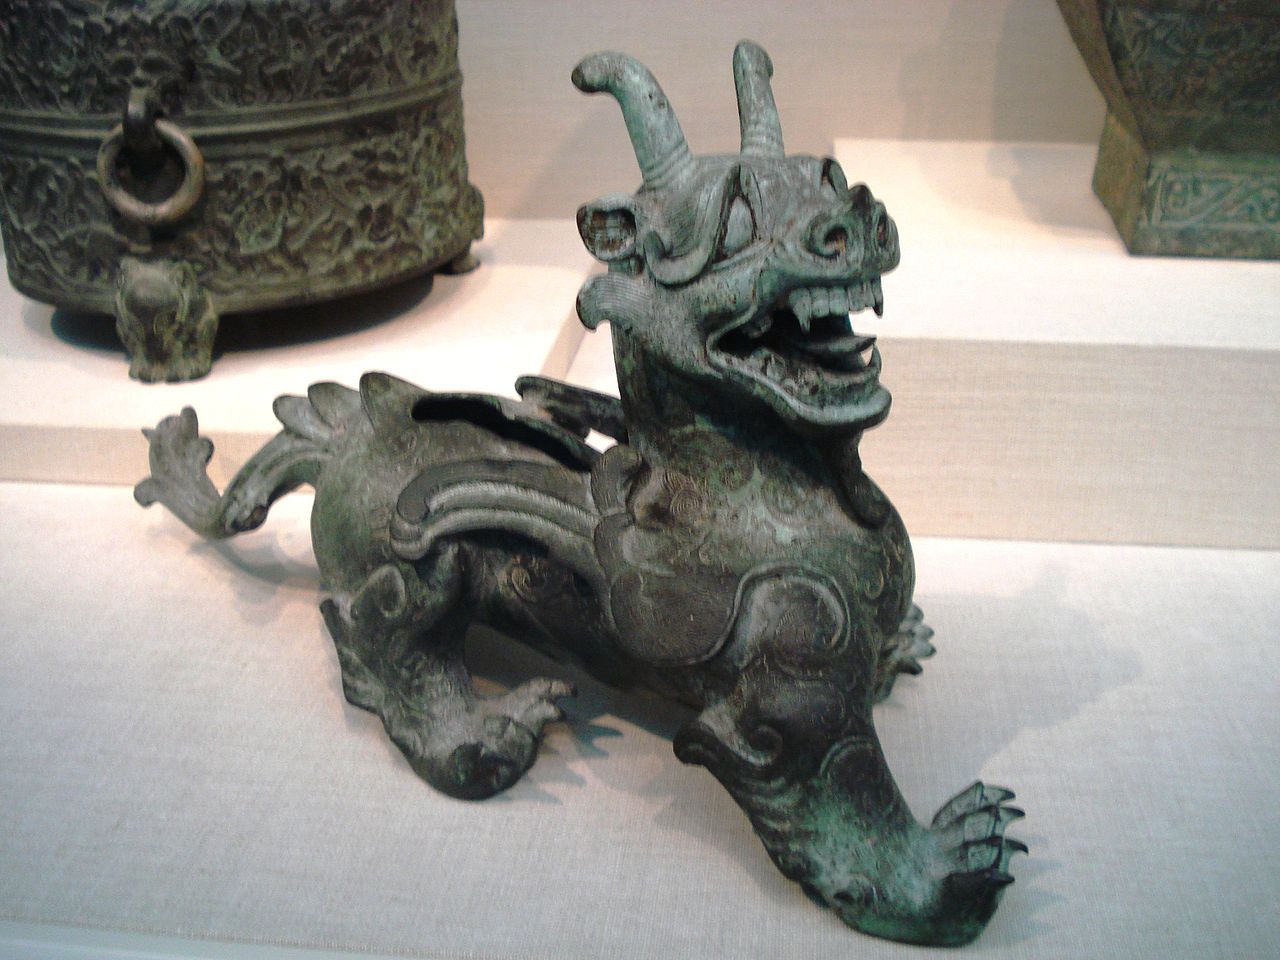 eno najbolj znanih umetniških del iz časa dinastije Han